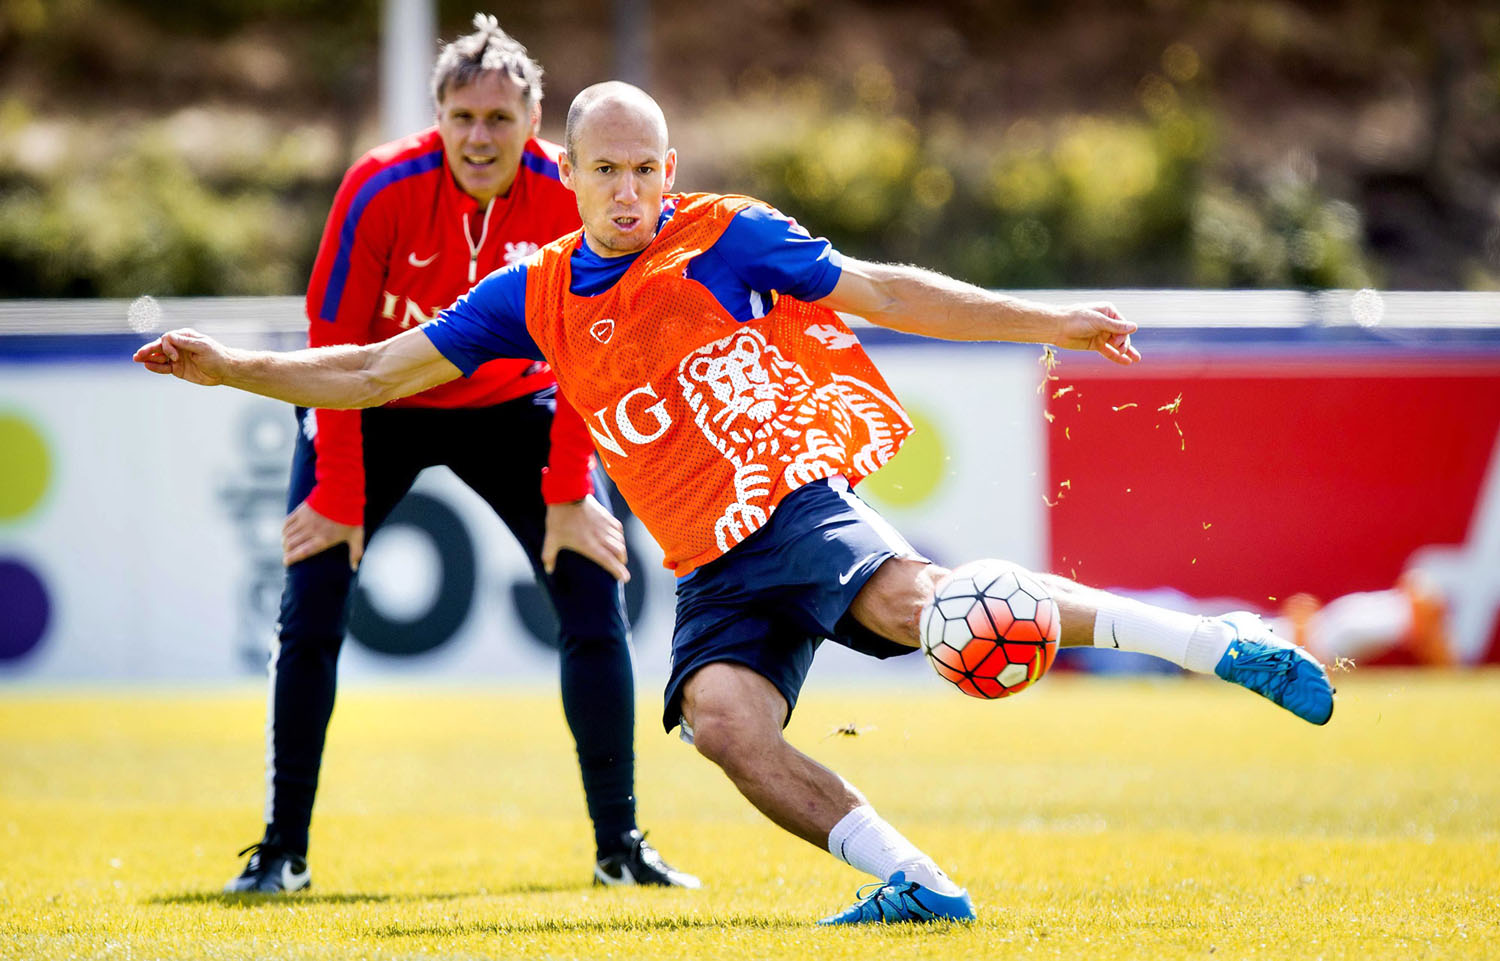 Klasszis kettős: Arjen Robben mozdulatát a másodedzőként tevékenykedő korábbi csillag, Marco van Basten figyeli Amszterdamban a hollandok Izland elleni, verejtékesnek ígérkező meccse előtti utolsó tréningen